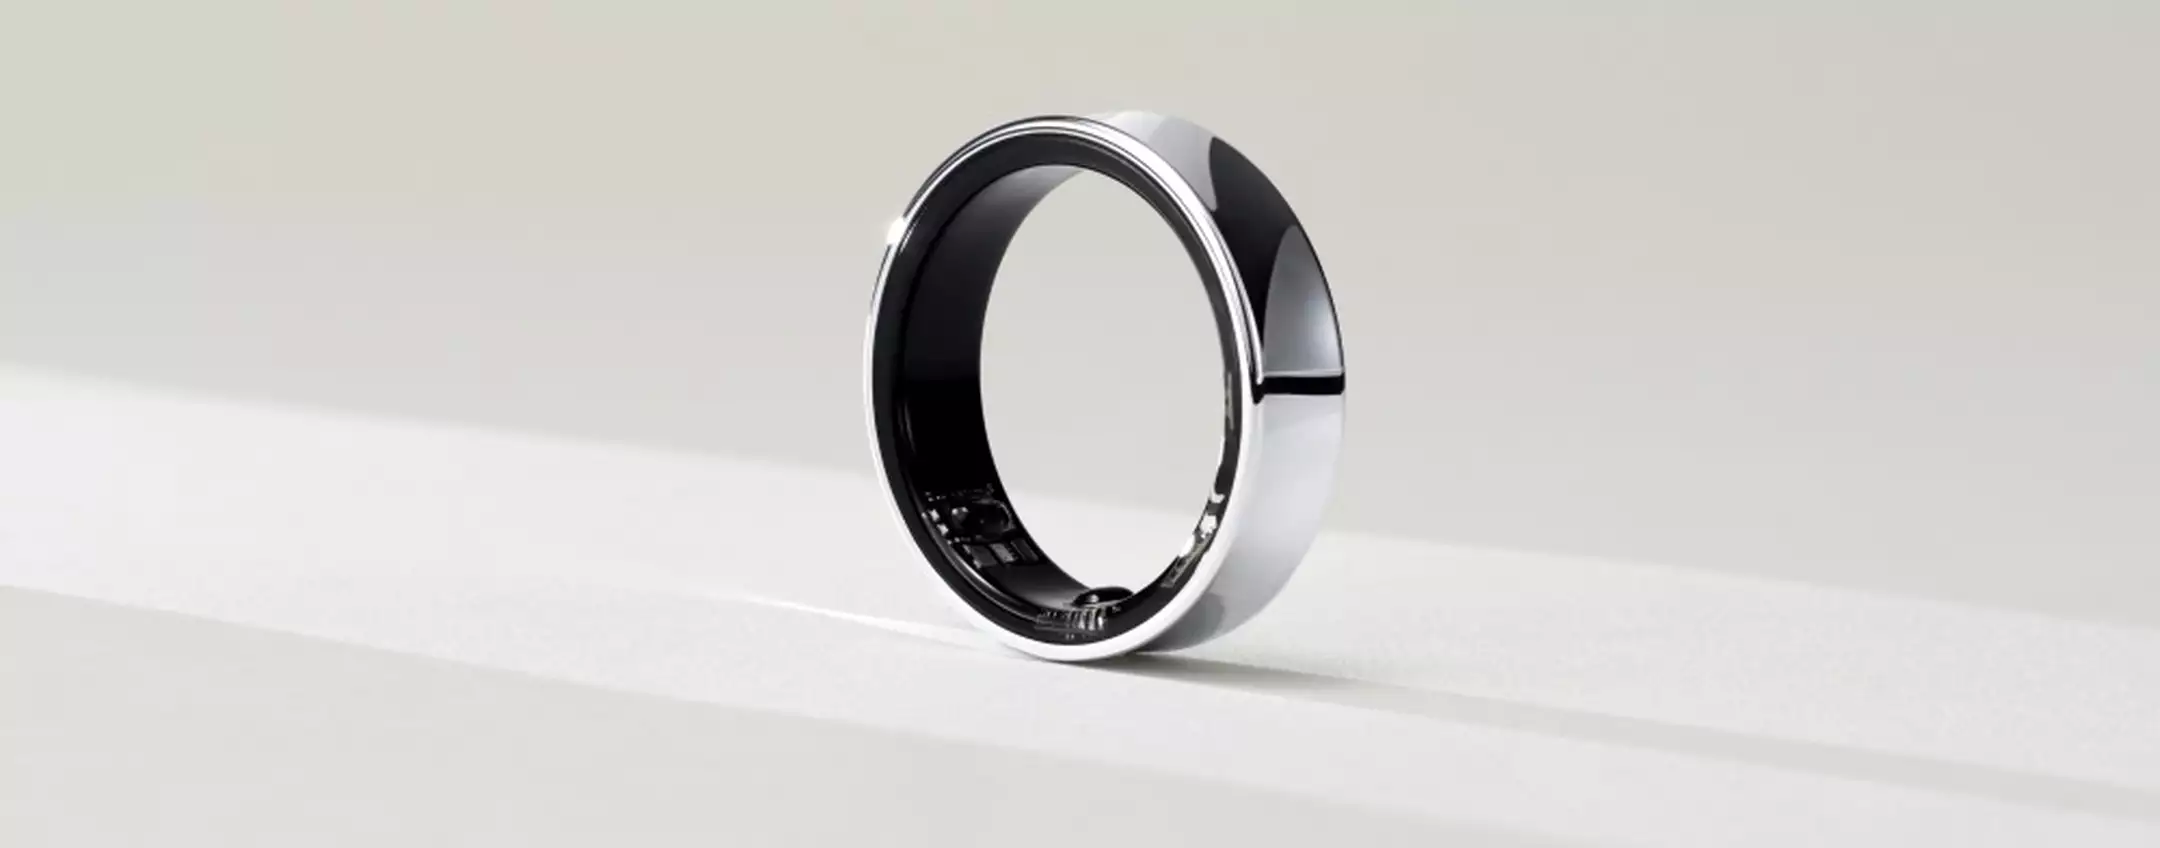 Samsung Galaxy Ring 2 è stato svelato da un brevetto